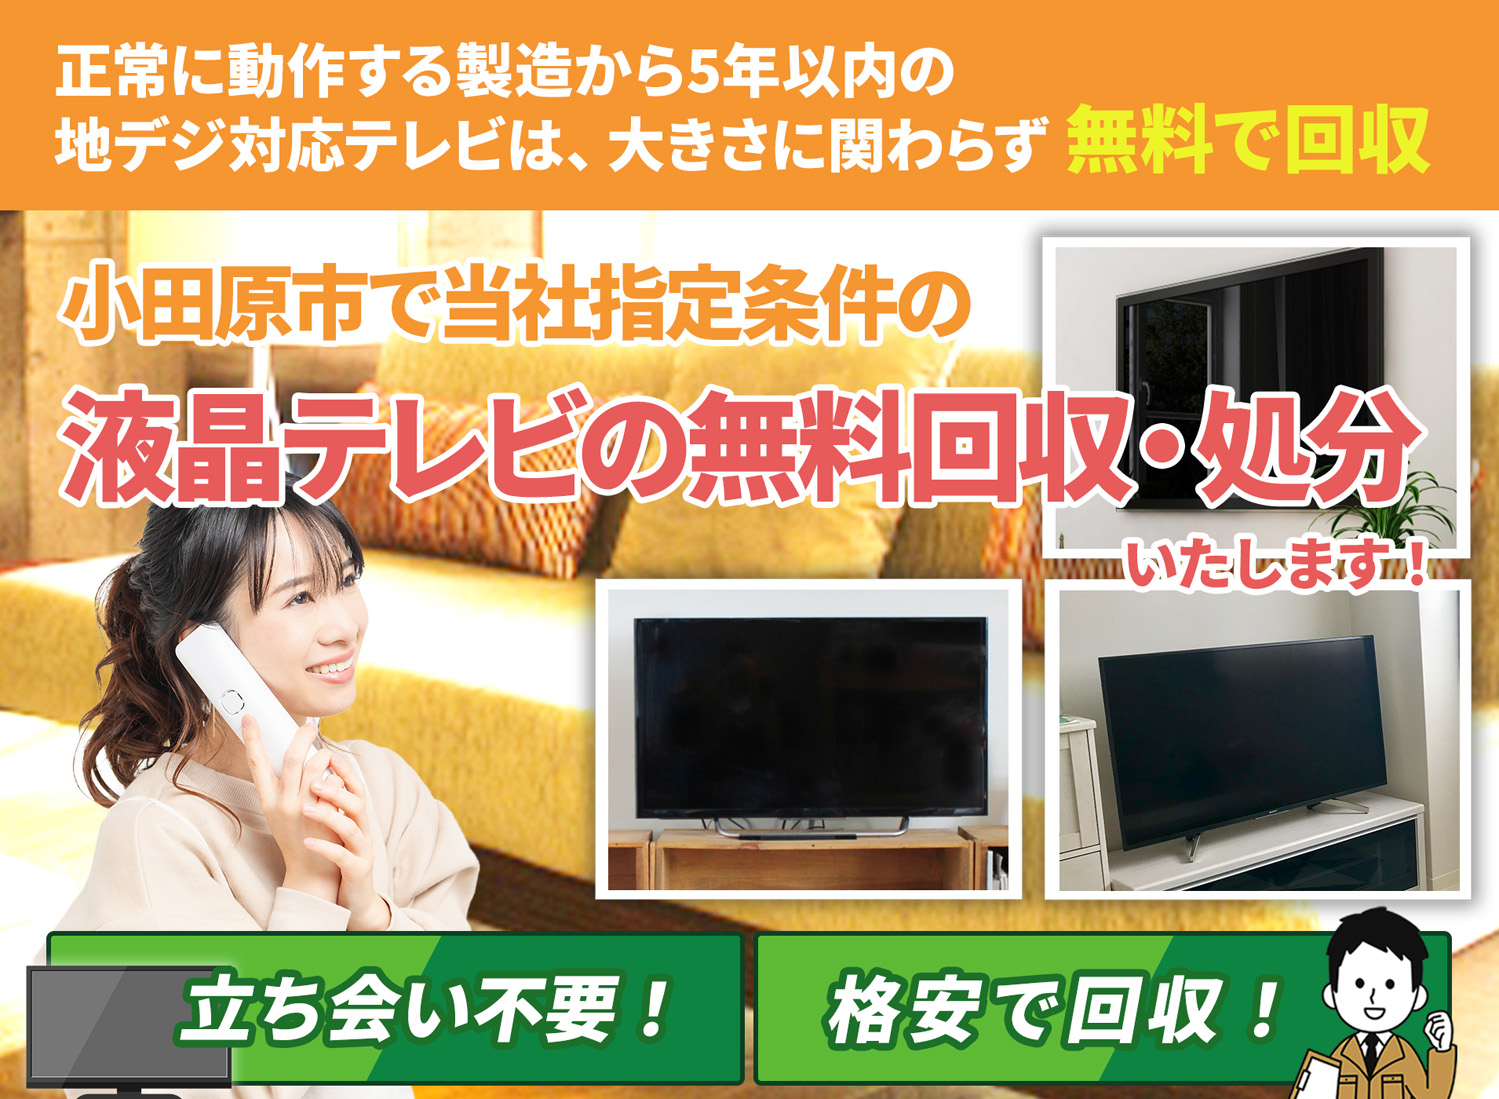 小田原市のサービスで地域一番を目指す液晶テレビ無料回収処分隊の液晶テレビ無料回収サービス